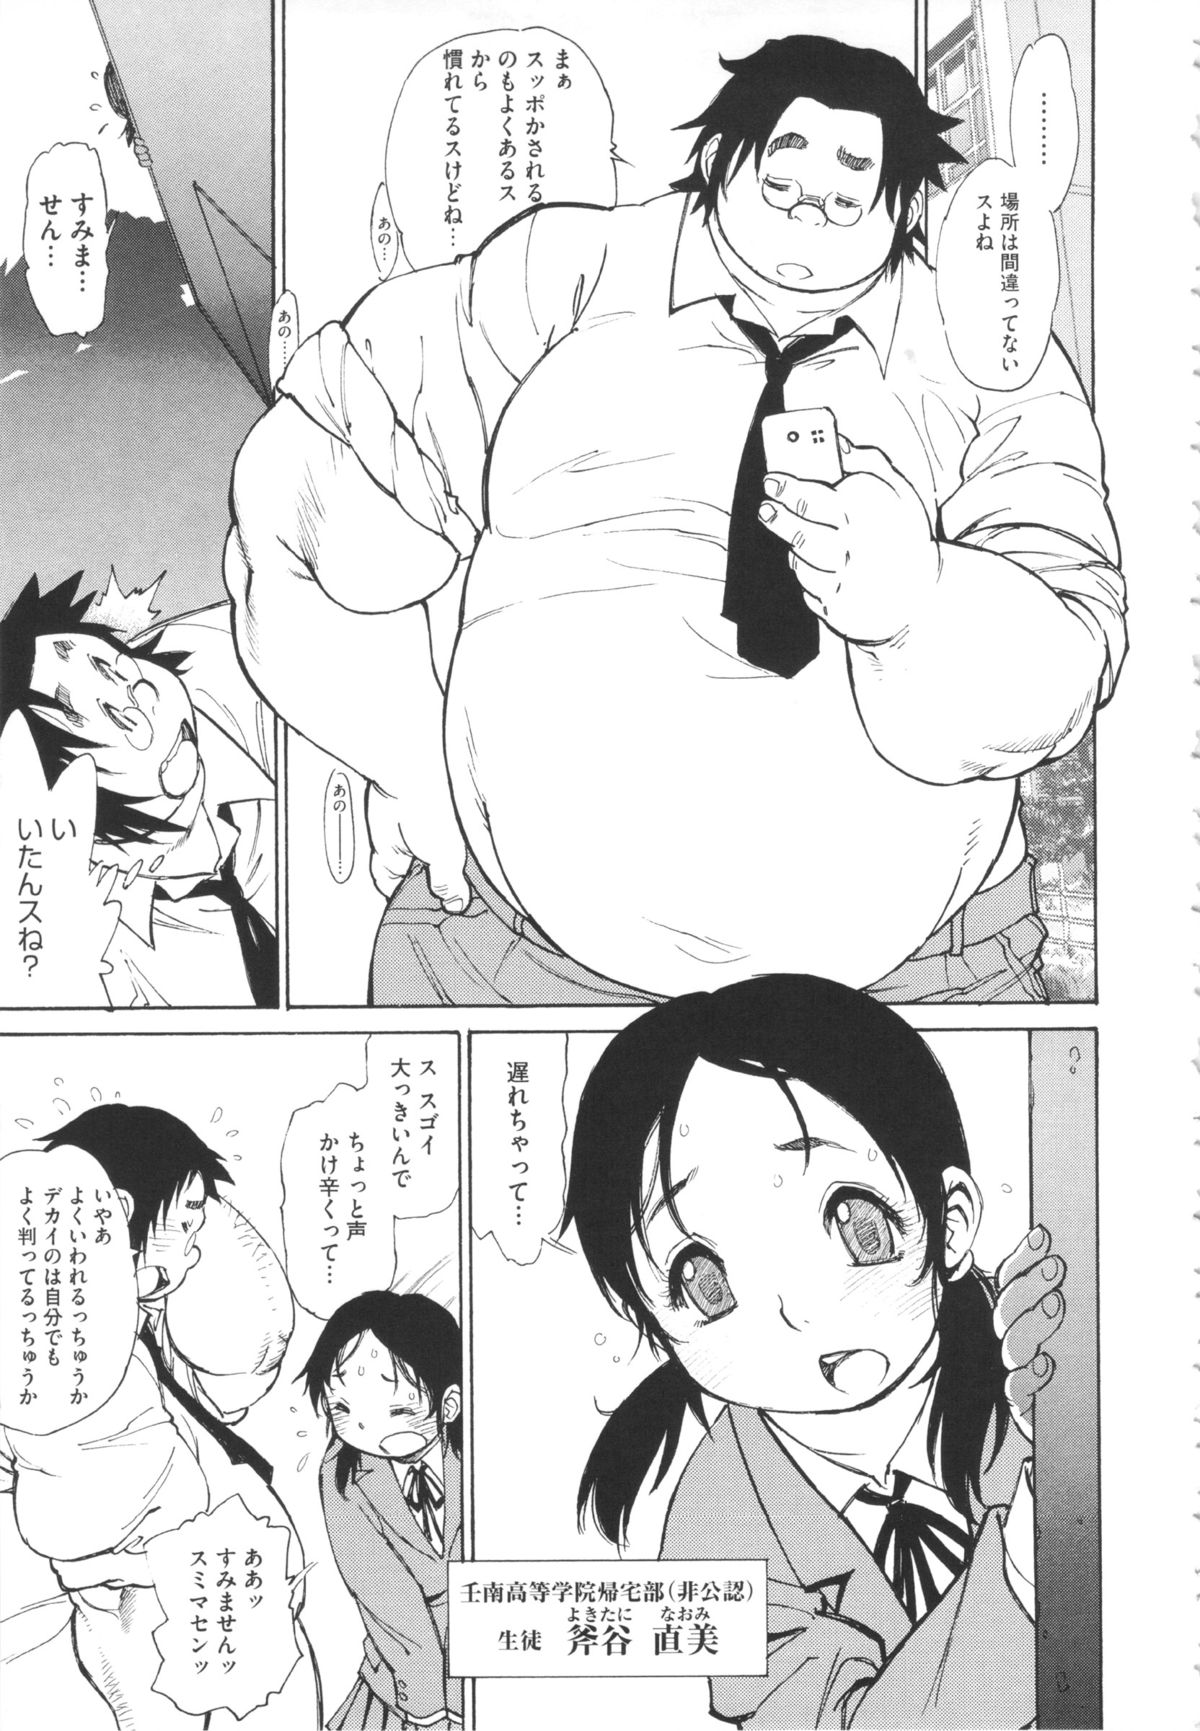 [田沼雄一郎] FAT BOY FAIRYTALE [2012-11-14]